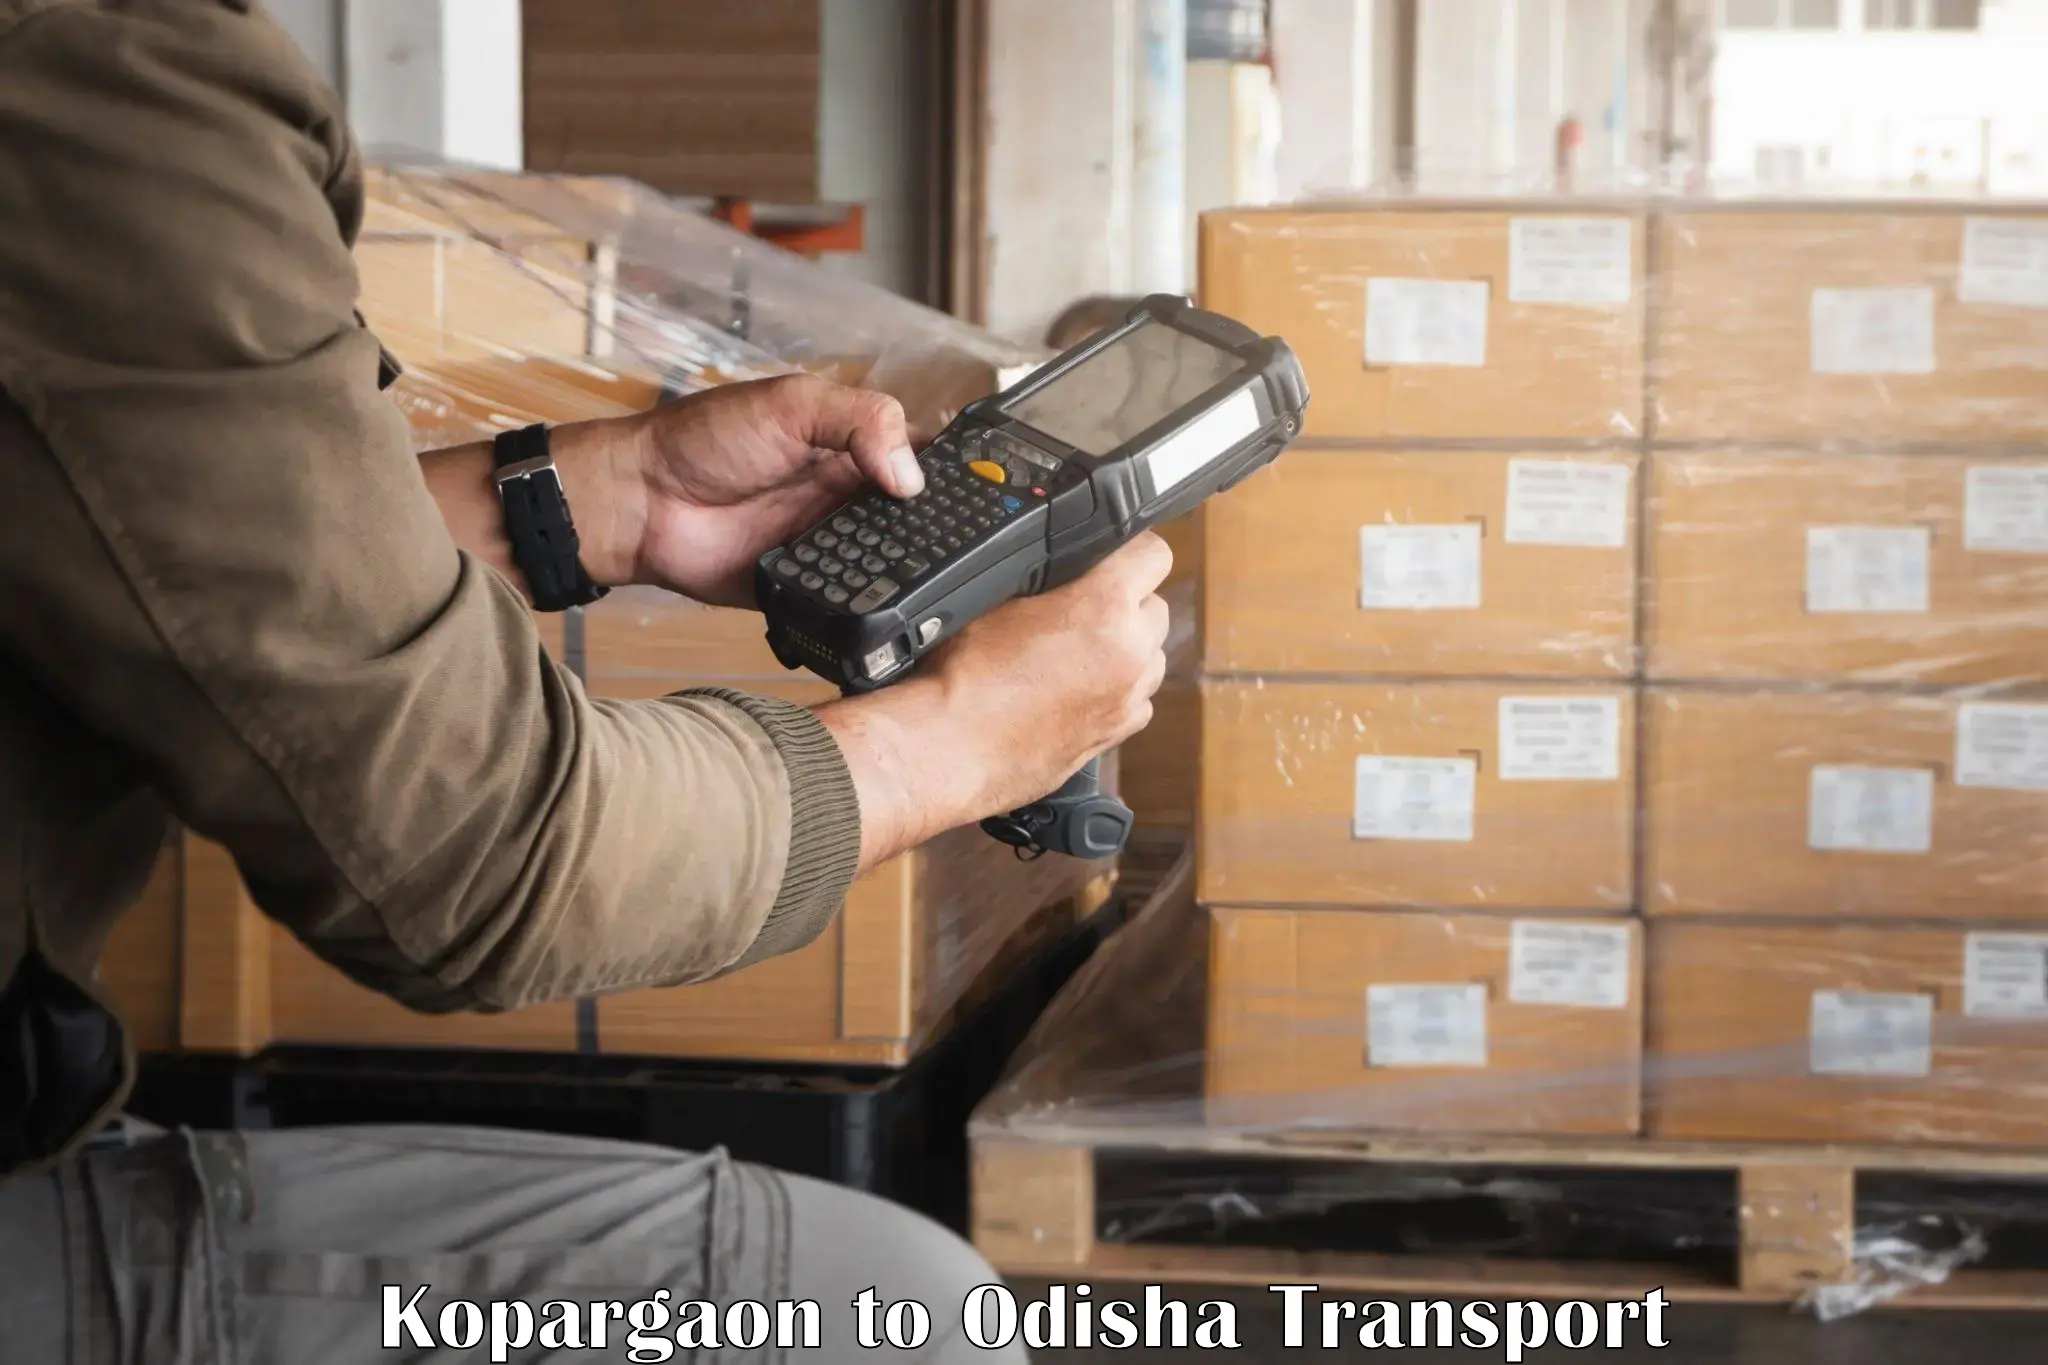 Shipping partner Kopargaon to Pipili